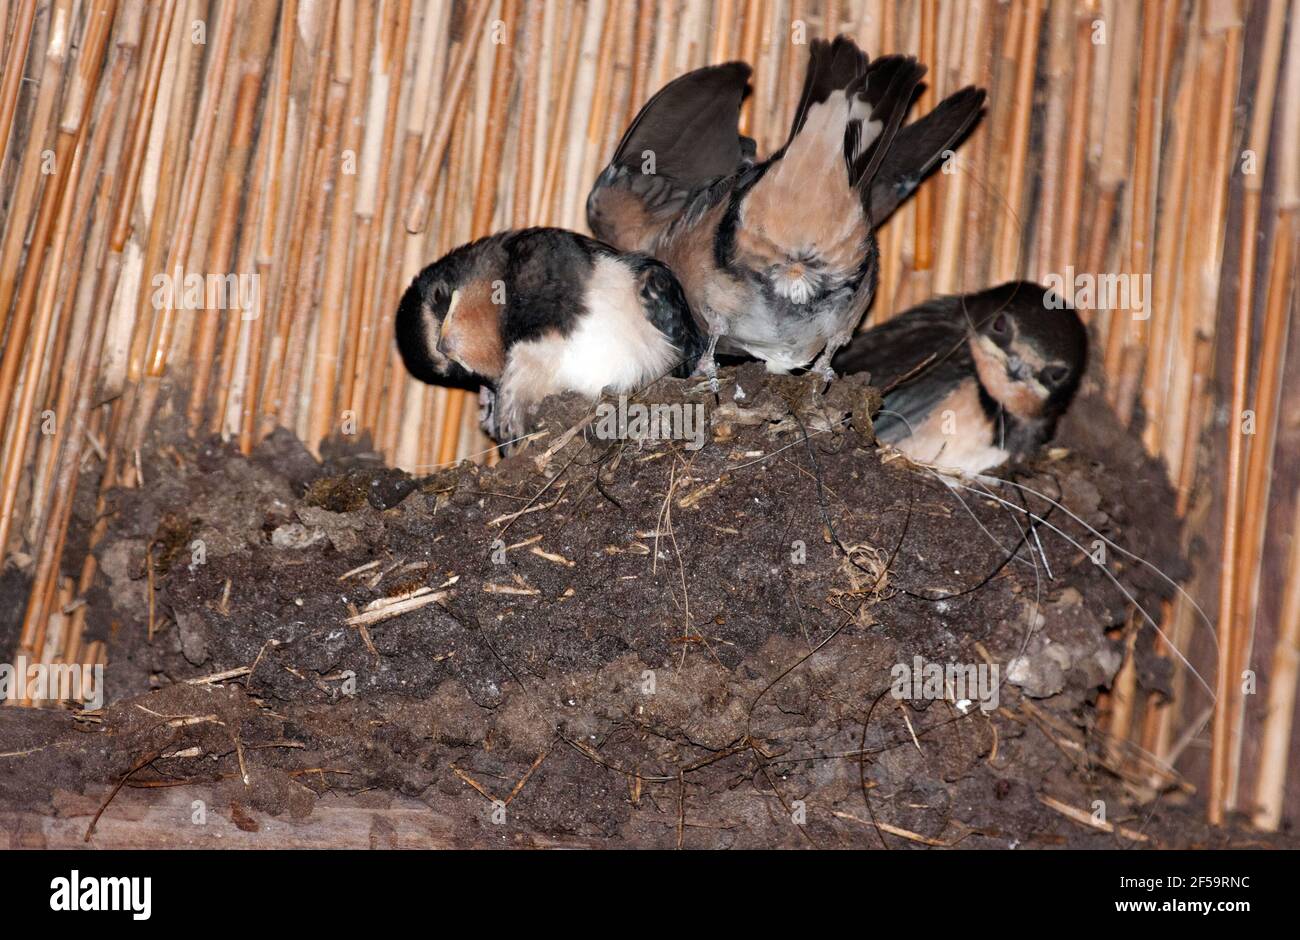 Junge Scheune Schwalben, Hirundo rustica, im Nest in Scheune des Bauernhauses unter einem Strohdach, einer von ihnen Poops über den Rand des Nestes, die anderen schauen Stockfoto